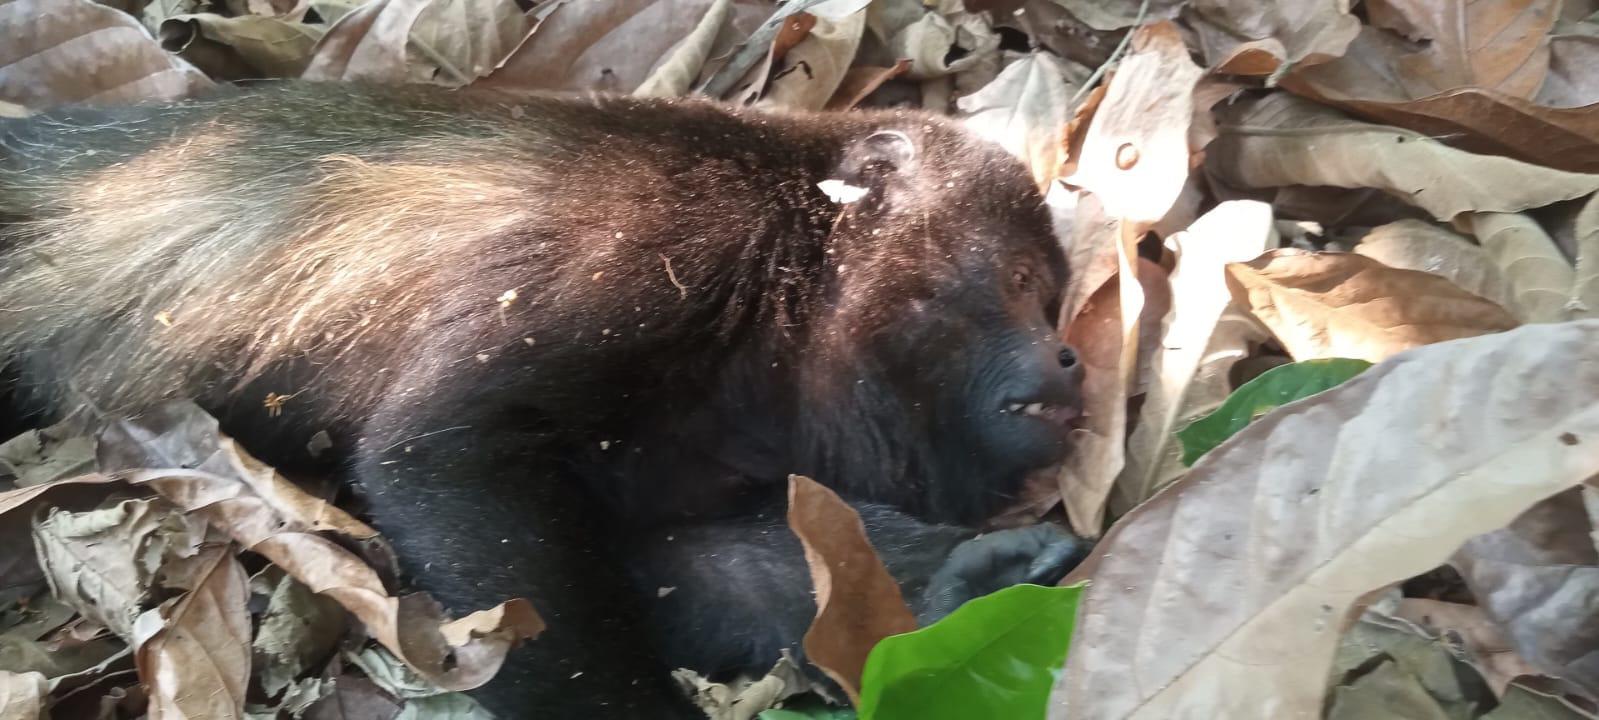 Incendios forestales y calor provocan muerte de 78 monos saraguatos en  Tabasco y Chiapas, denuncia organización ambientalista